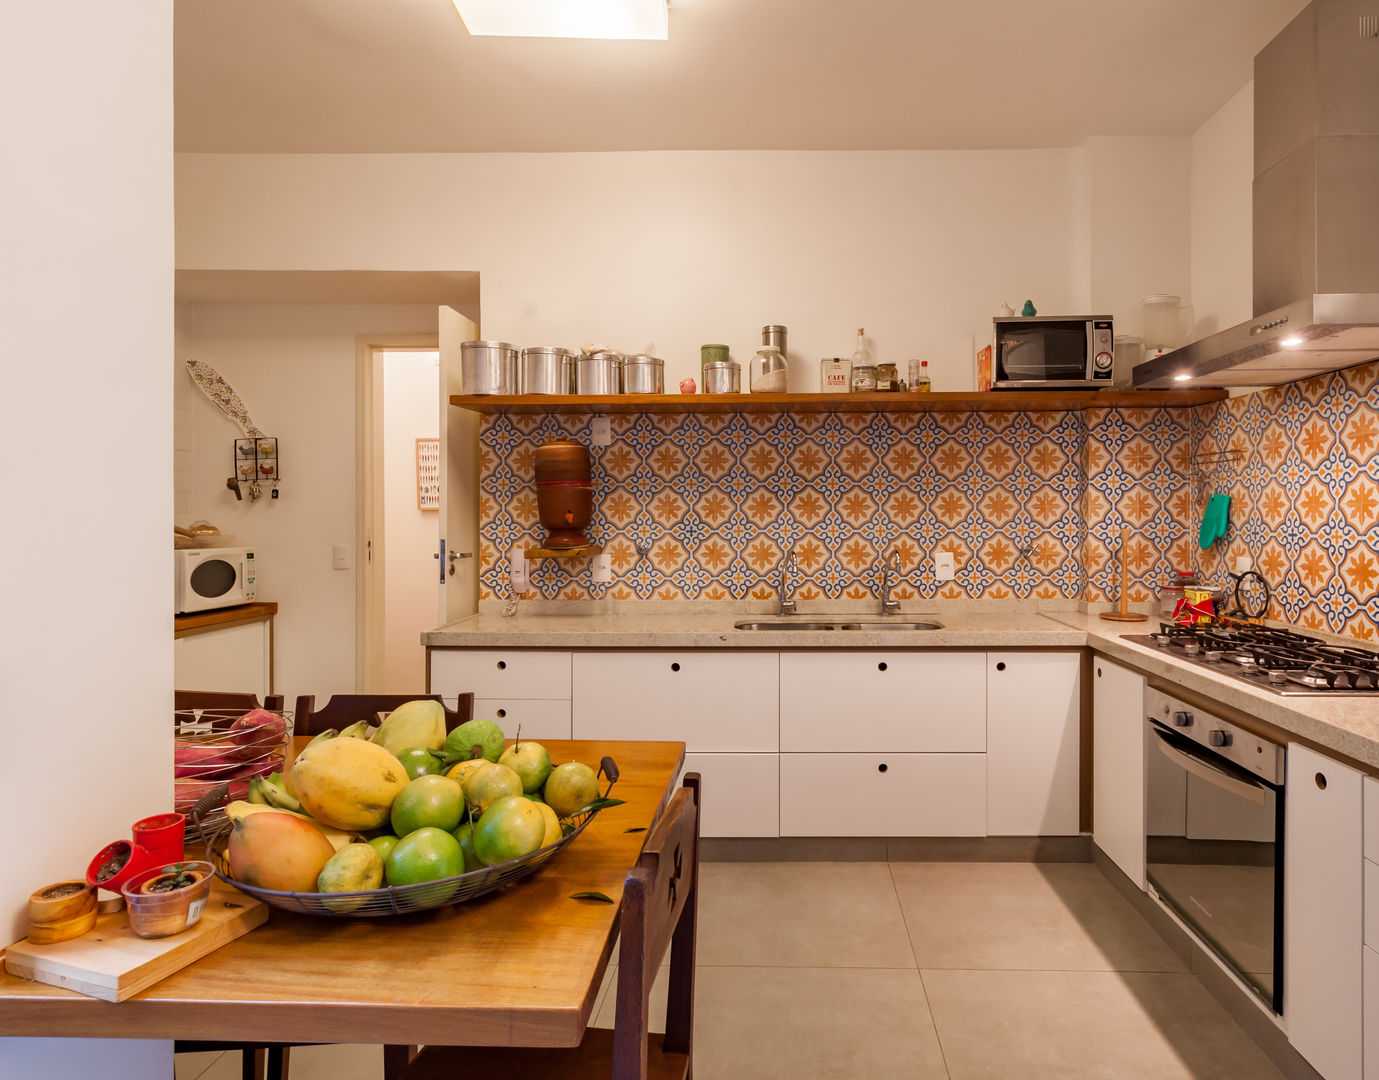 Apartamento no bairro Funcionários, Aptar Arquitetura Aptar Arquitetura Cocinas modernas: Ideas, imágenes y decoración Azulejos